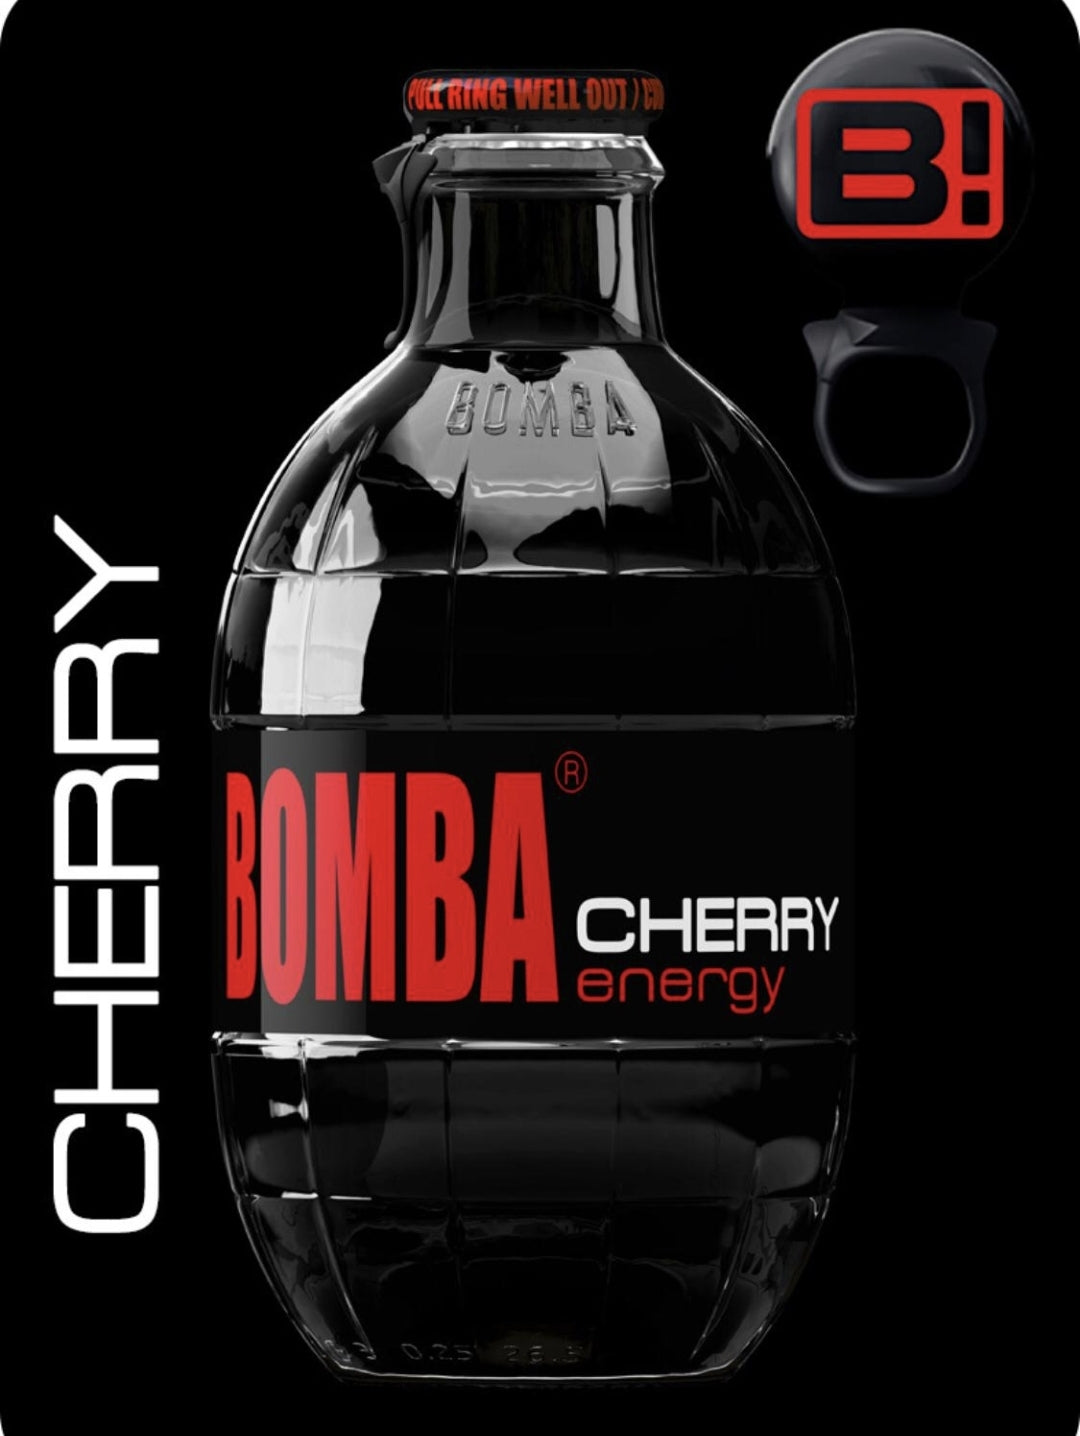 Bomba - Cherry Energy drankje